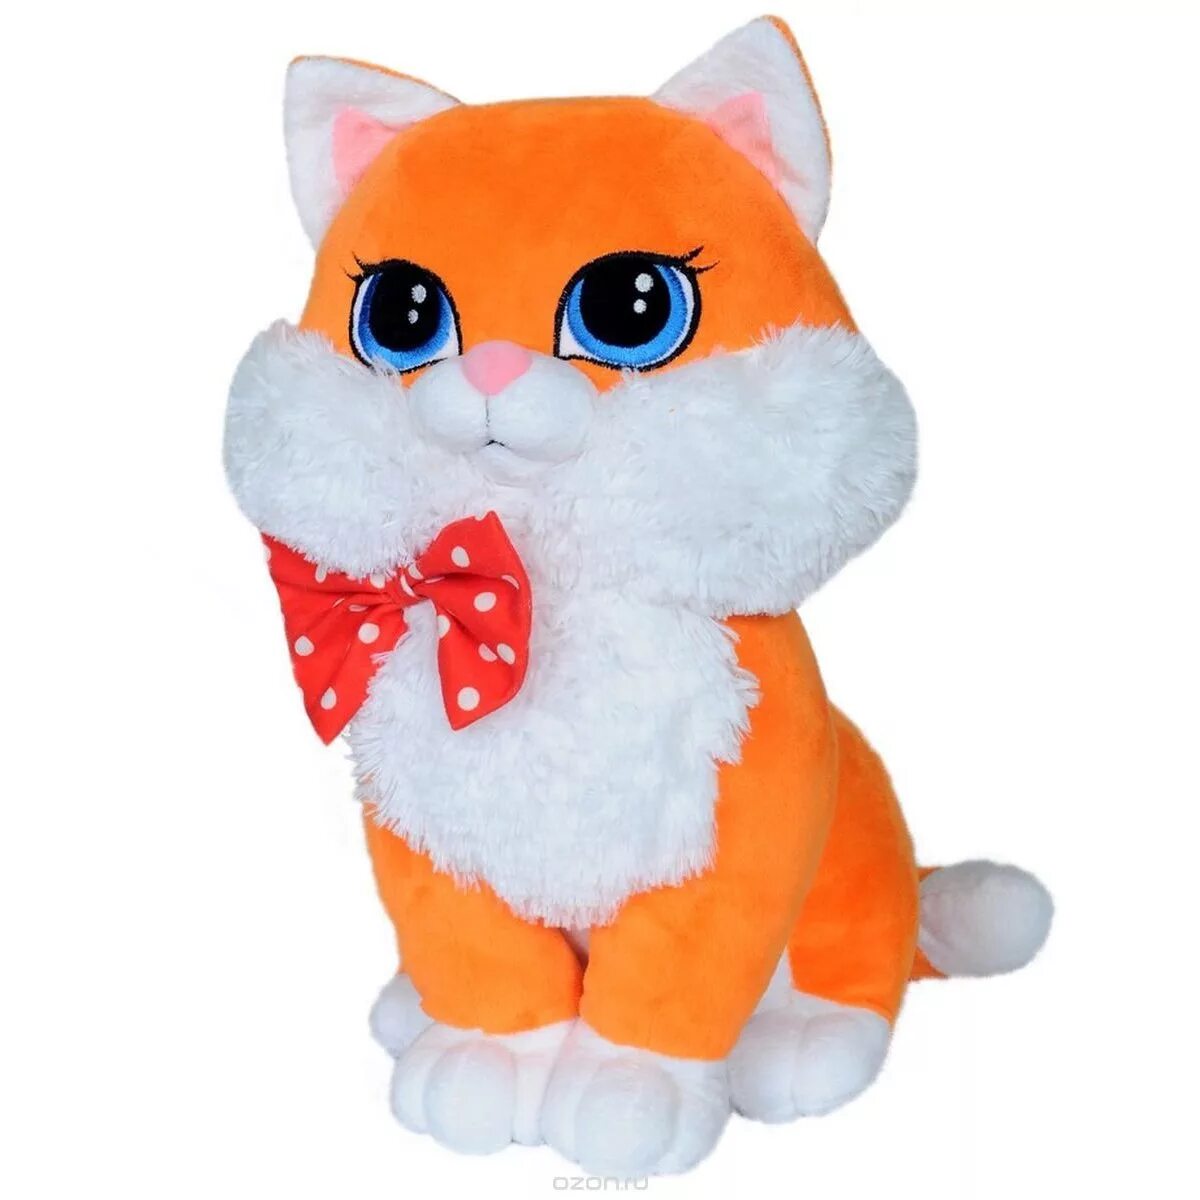 Мягкая игрушка "кошка Люси", 42 см. Мягкая игрушка СМОЛТОЙС кот Федот 85 см. Мягкая игрушка СМОЛТОЙС кошка Люси серая 42 см. Мягкая игрушка СМОЛТОЙС кошка Люси оранжевая 42 см. Игрушечная кошечка